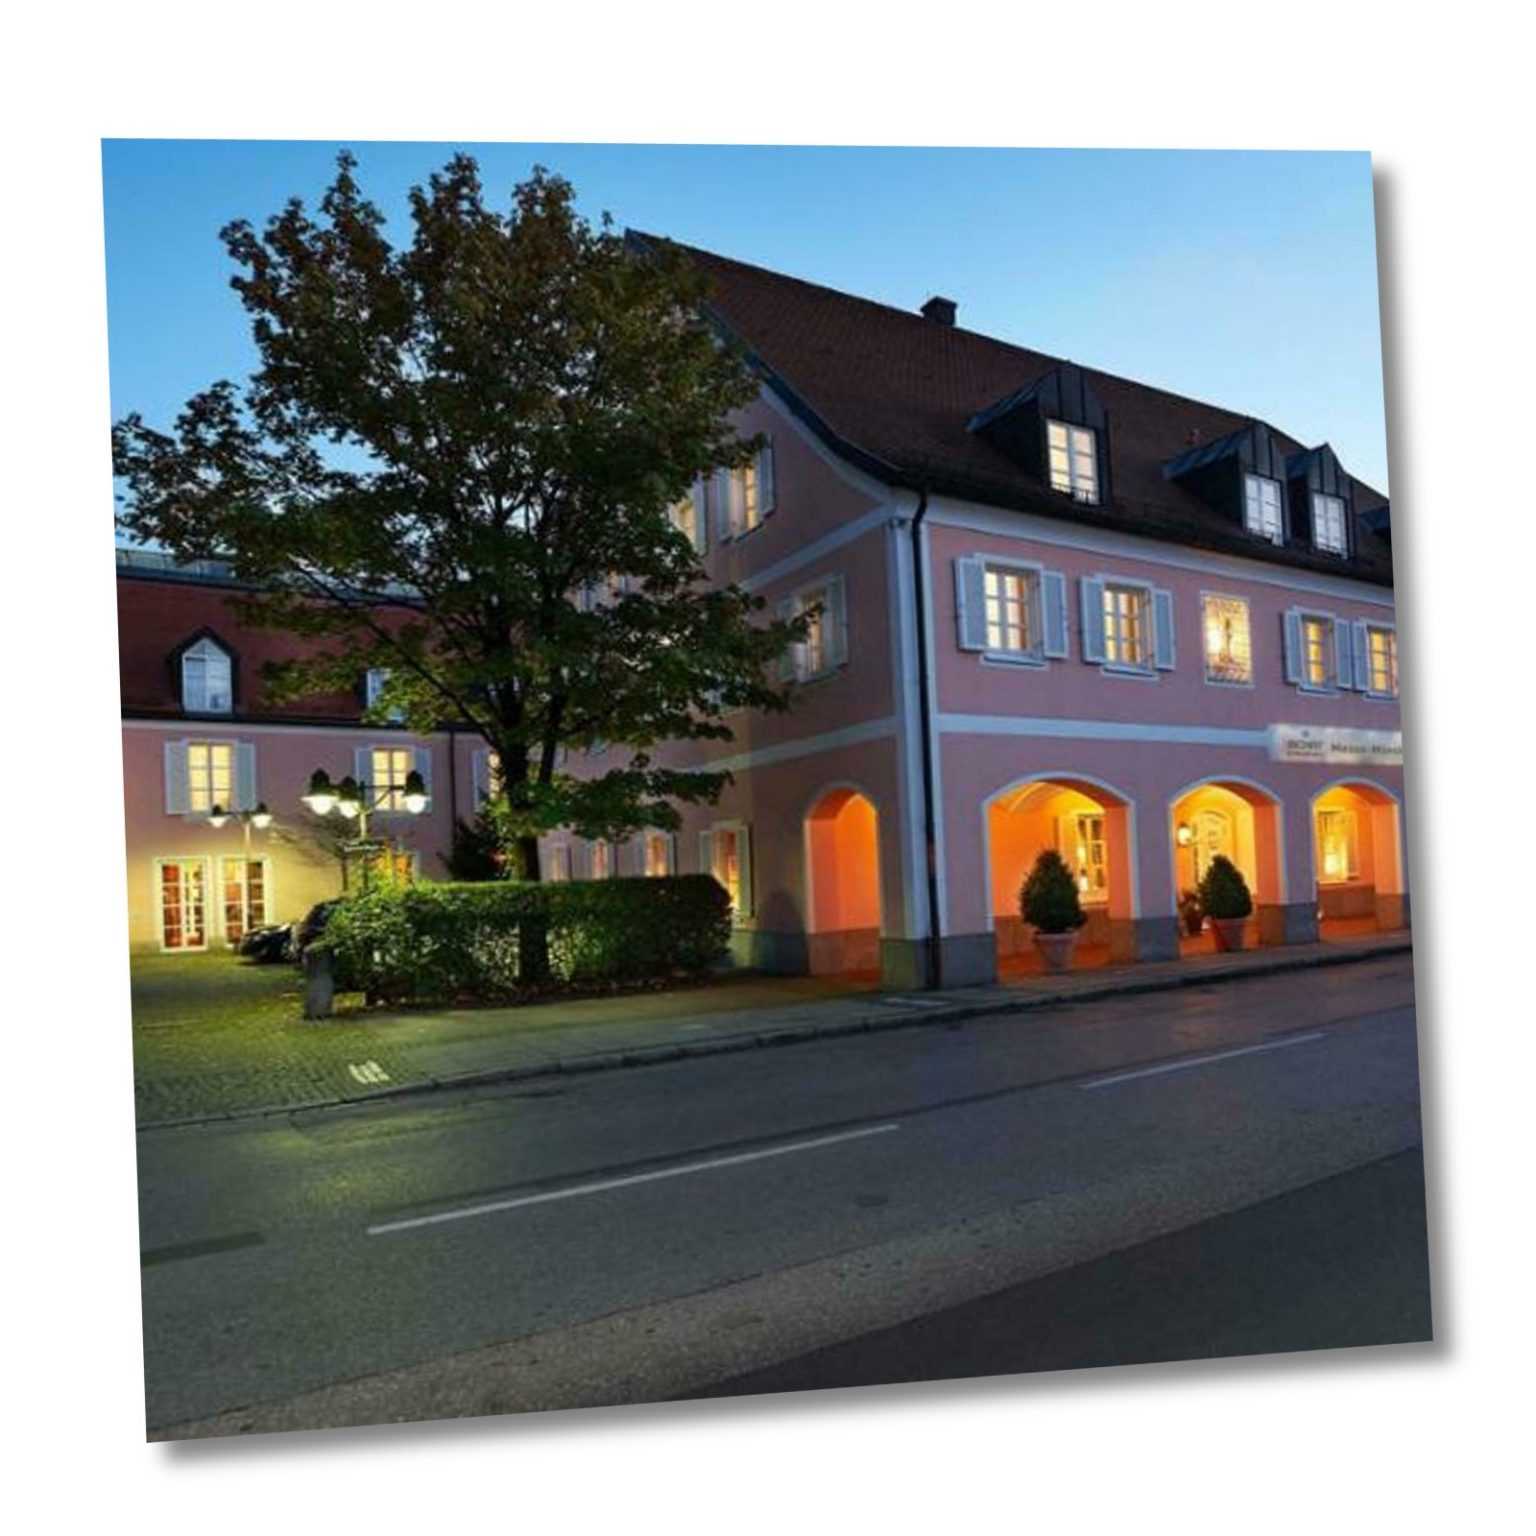 Aschheim nahe München Erding Kurztripp für 2 Personen Hotelgutschein 3 Nächte